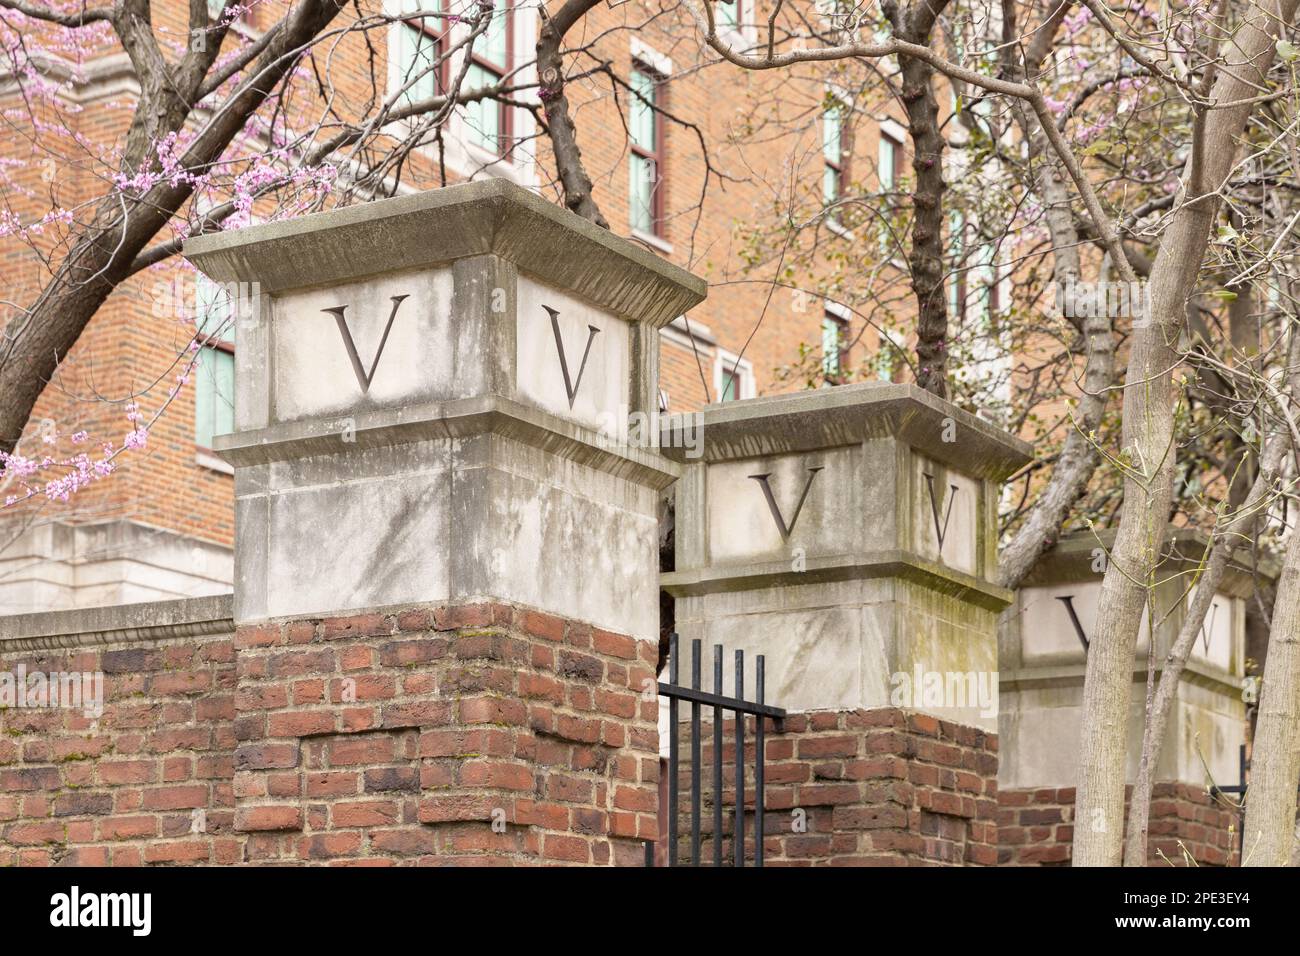 L'Université Vanderbilt est une université de recherche privée, fondée en 1873, située au cœur de Nashville, TN. Banque D'Images